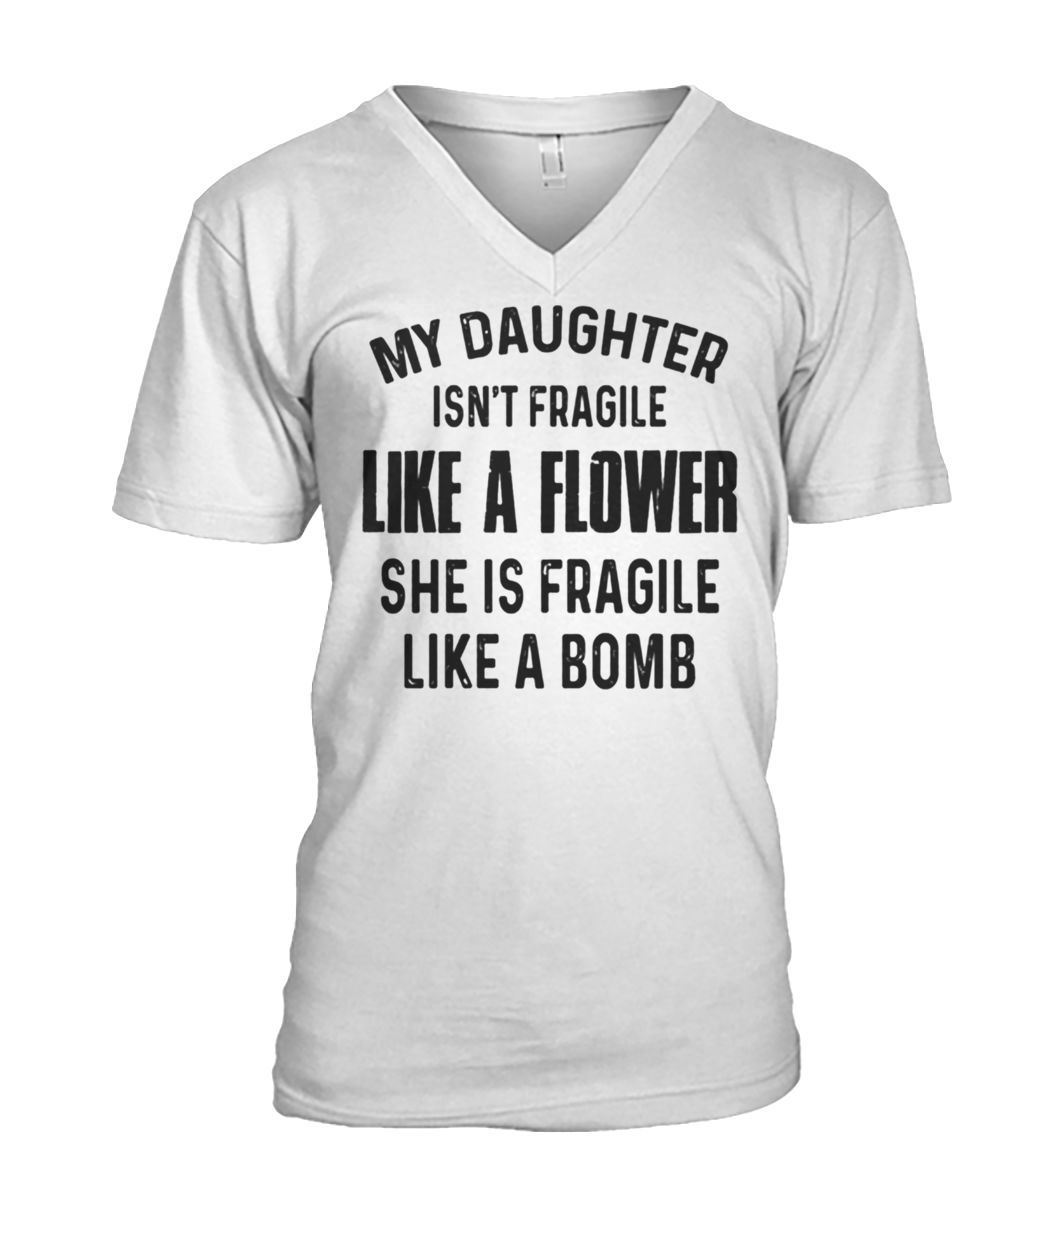 My daughter isn't fragile like a flower she is fragile like a bomb mens v-neck